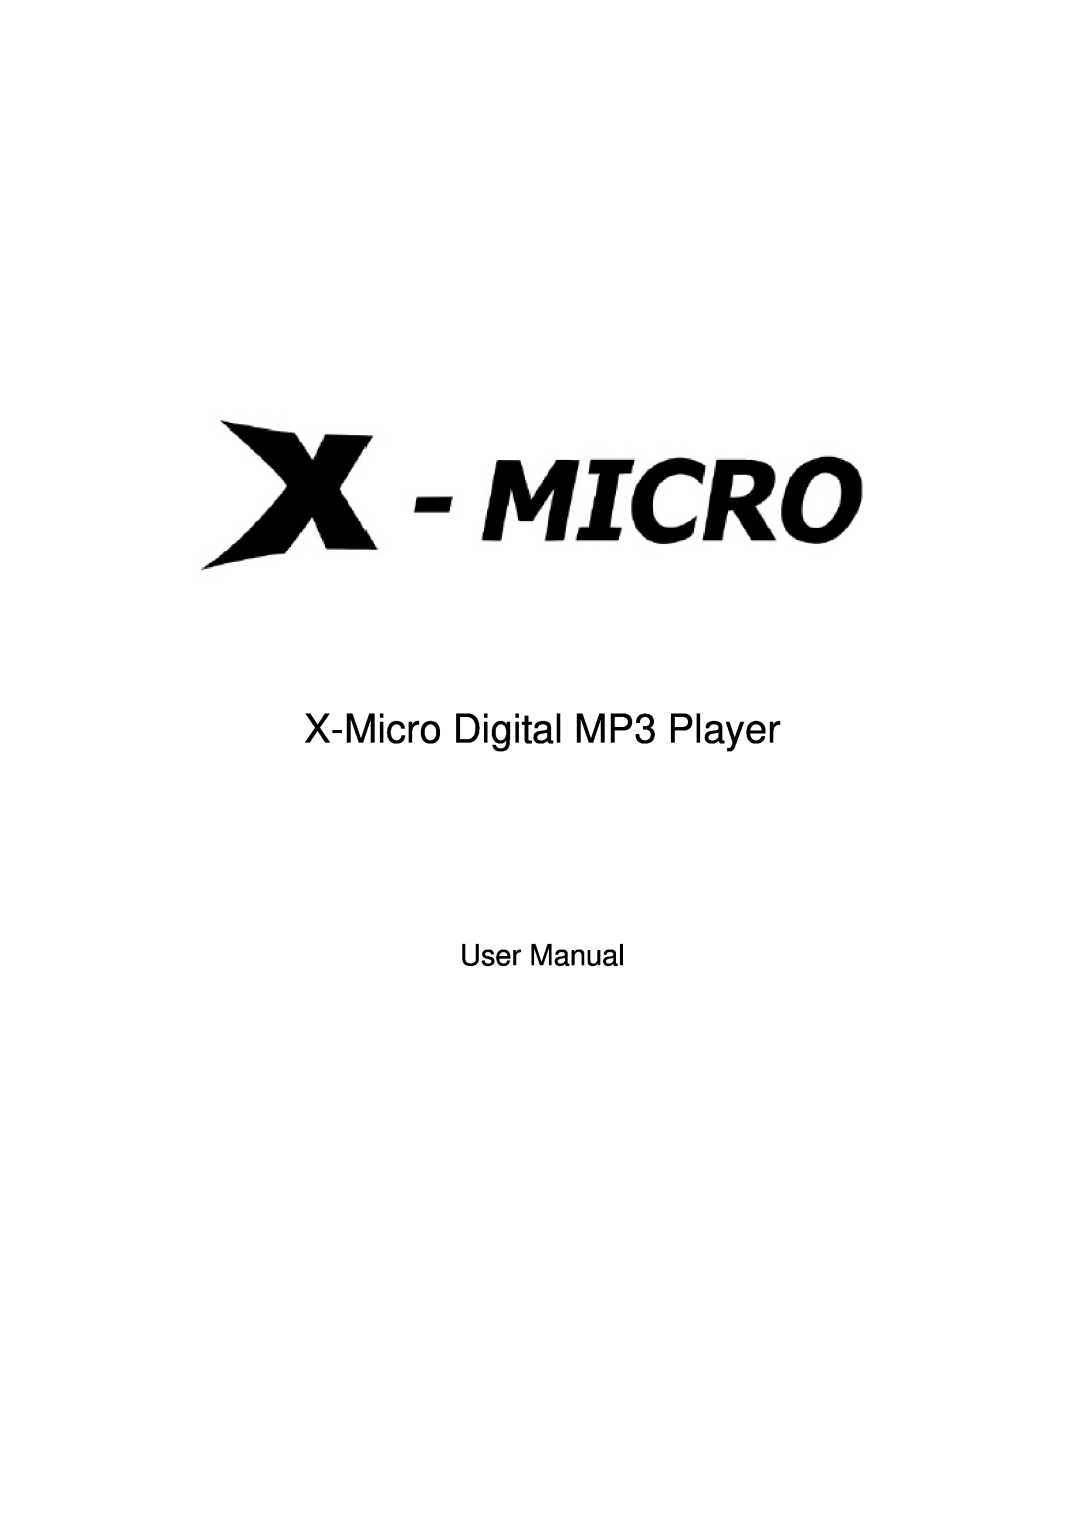 X-Micro Tech user manual X-Micro Digital MP3 Player, User Manual 